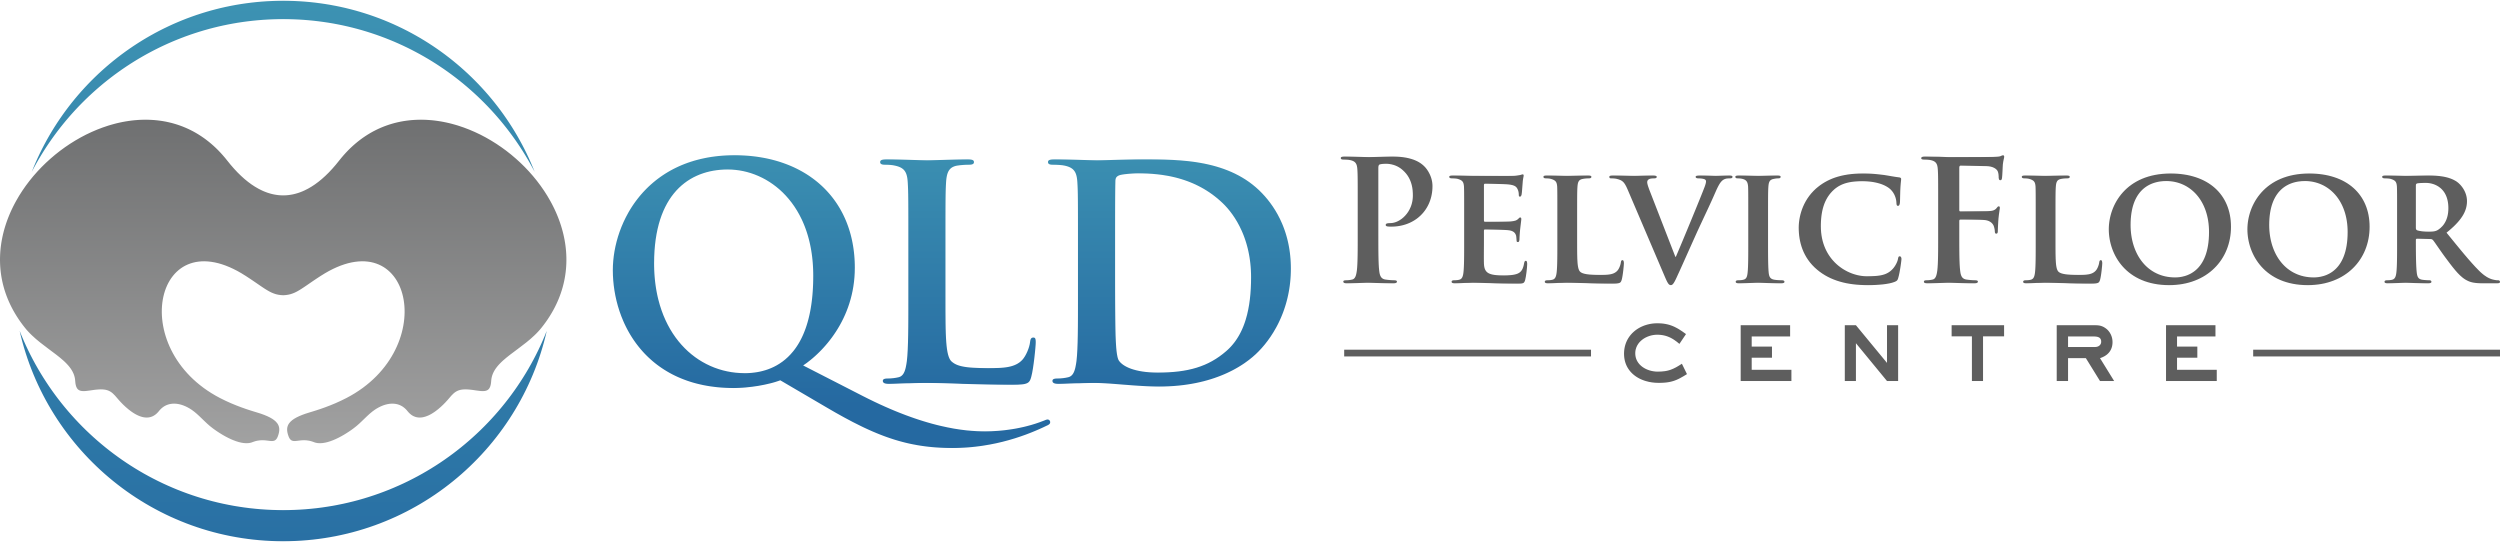 Qld Pelvic Floor Centre Logo